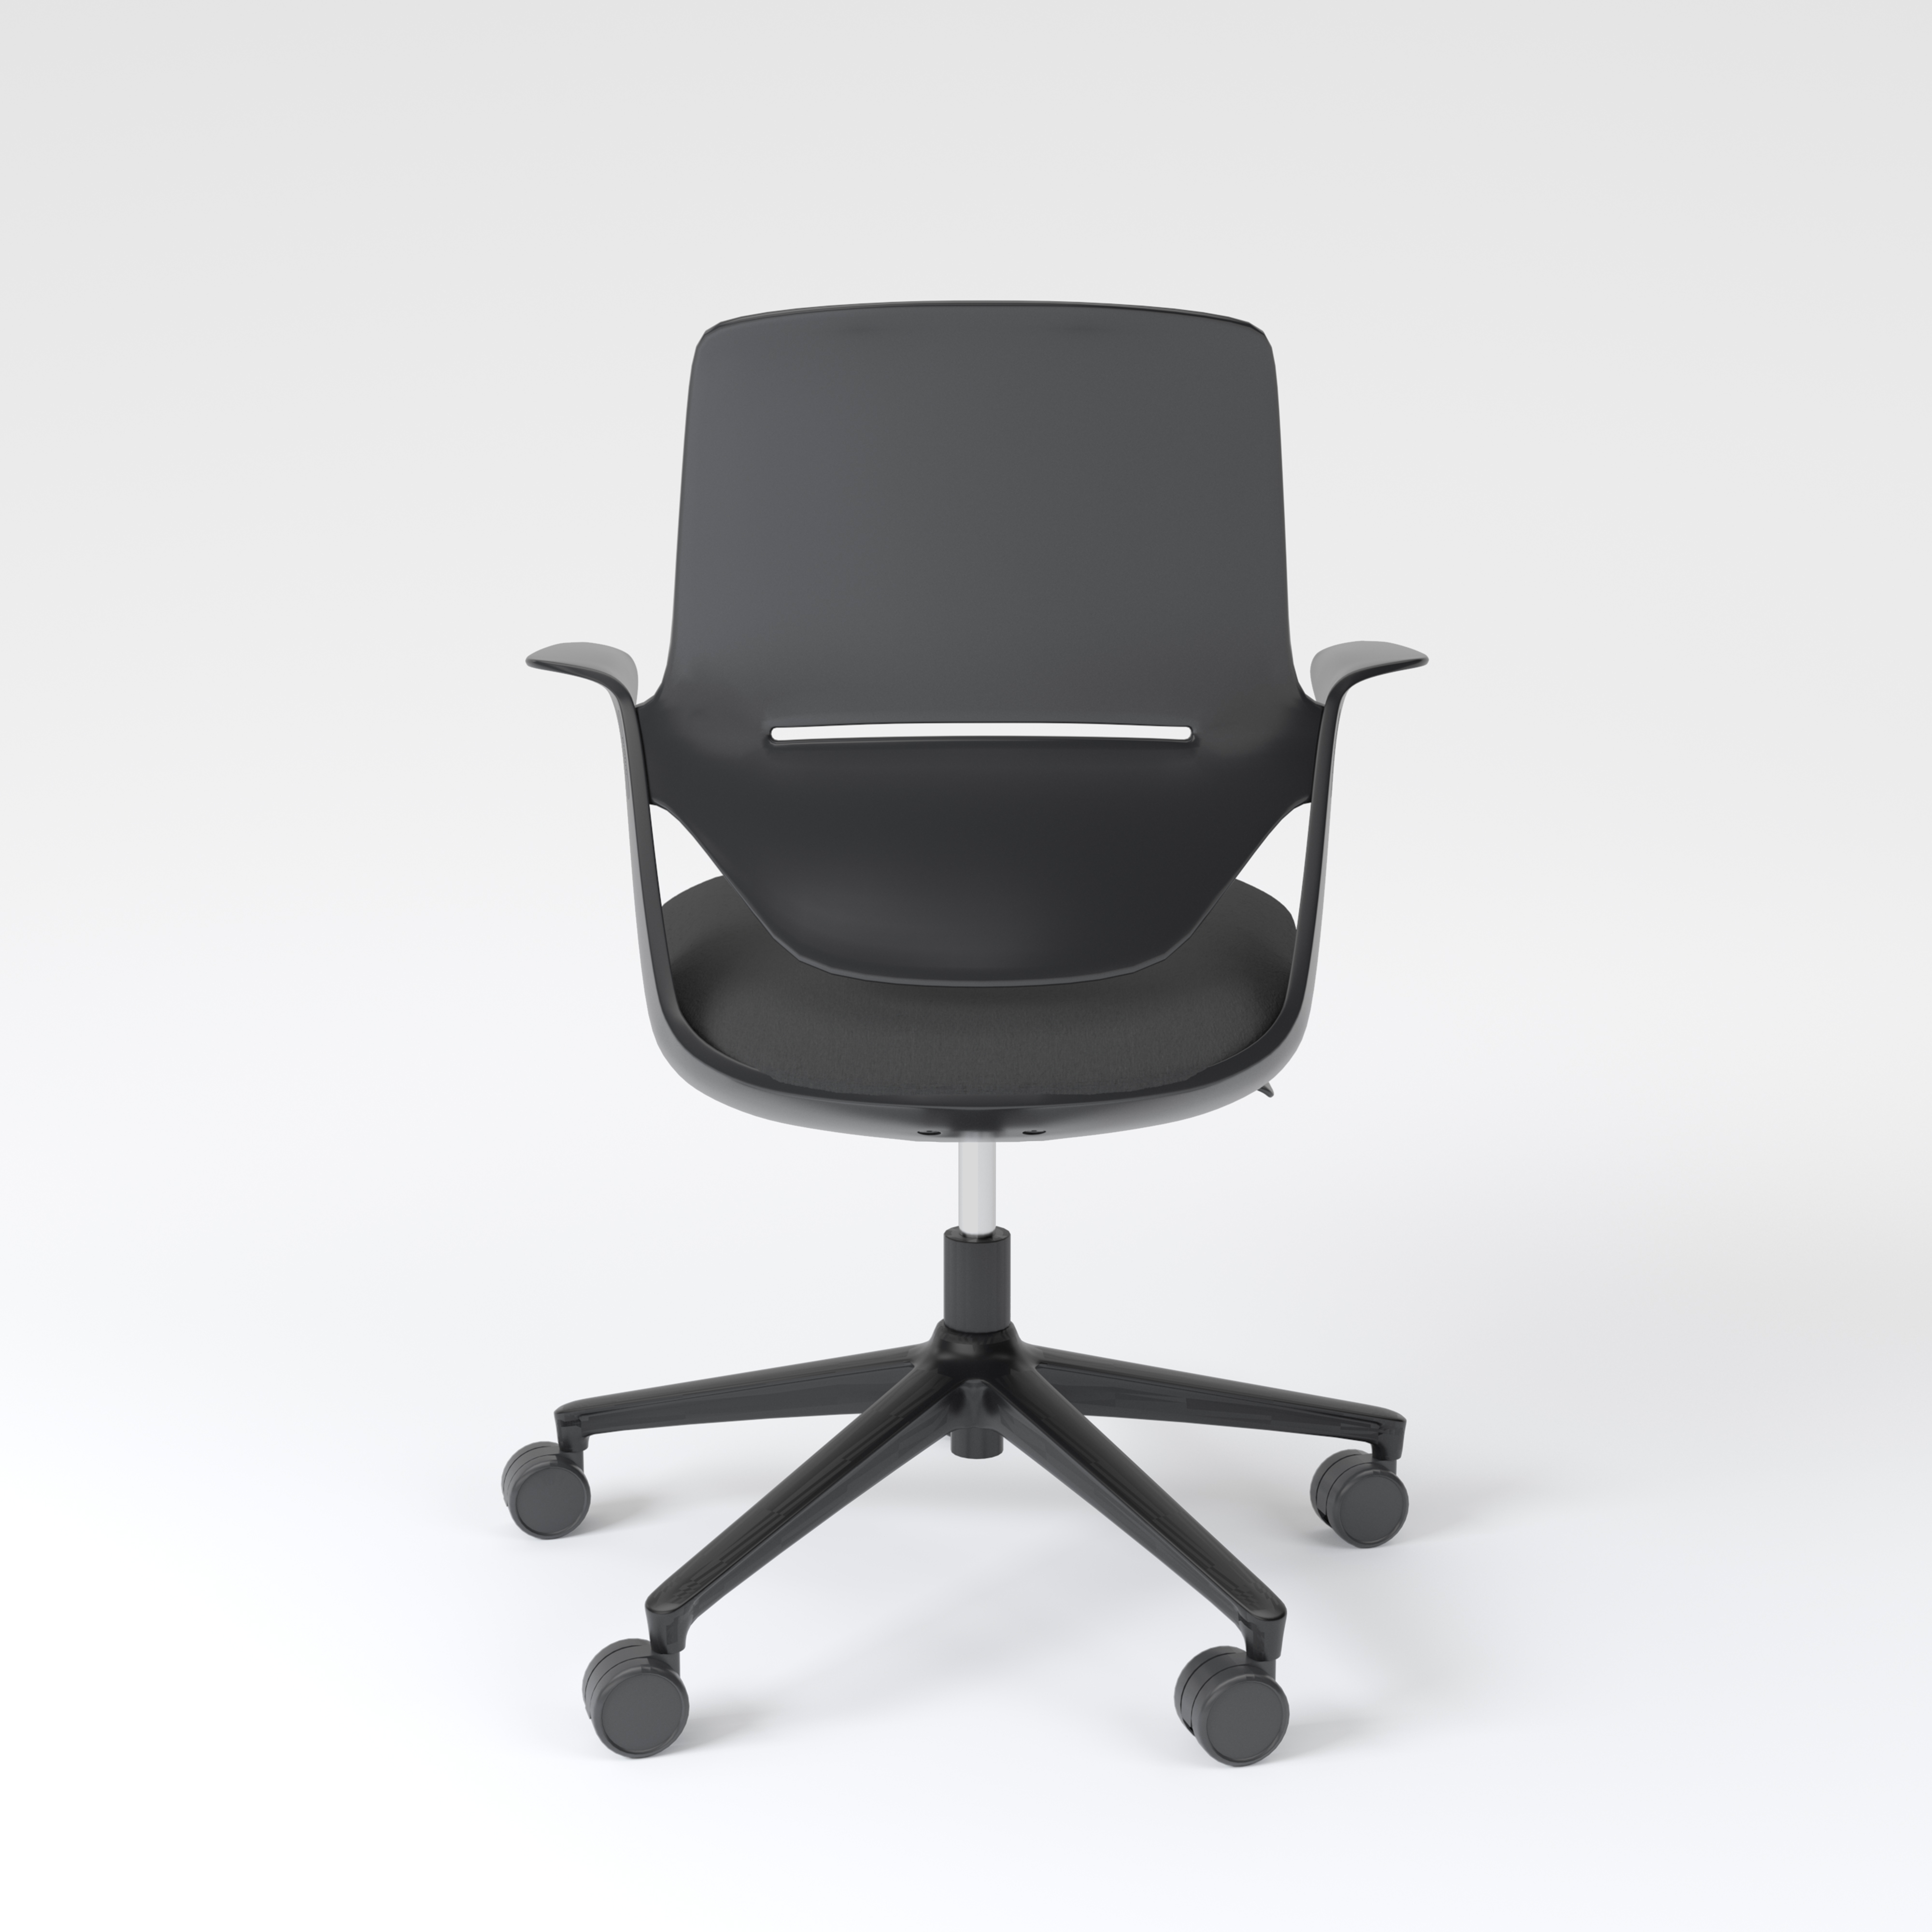 Desk chair Trillo, black with black seat